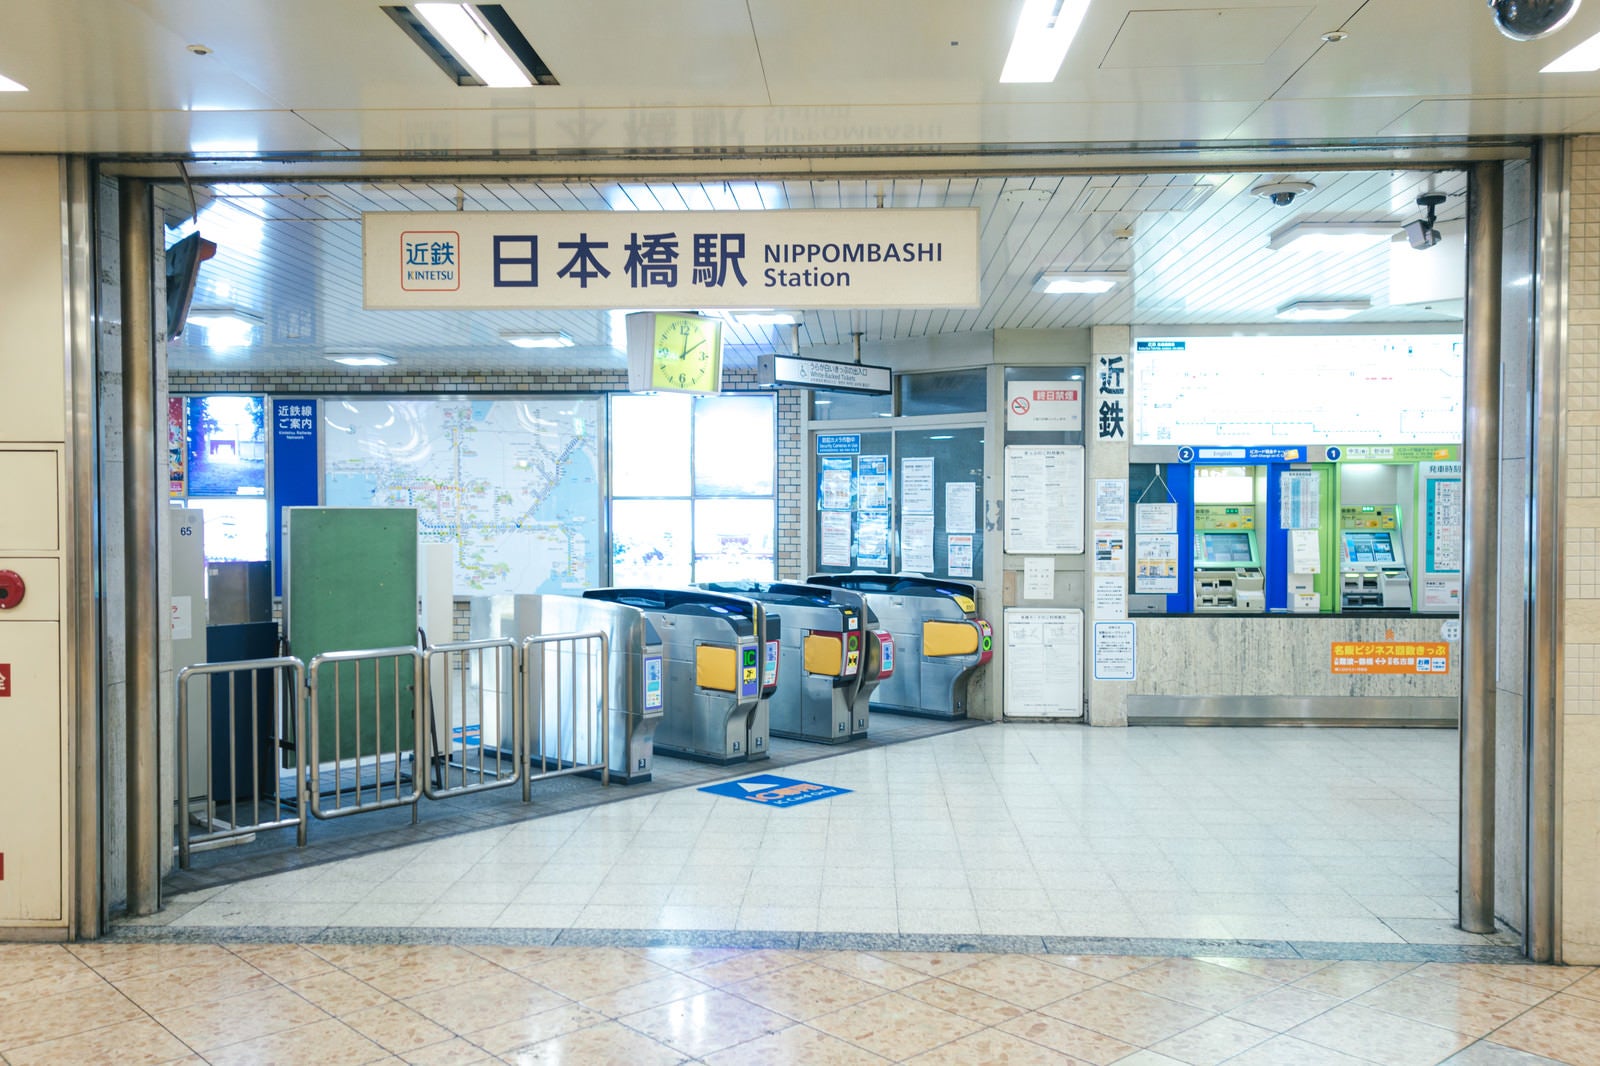 「近鉄日本橋駅の改札」の写真